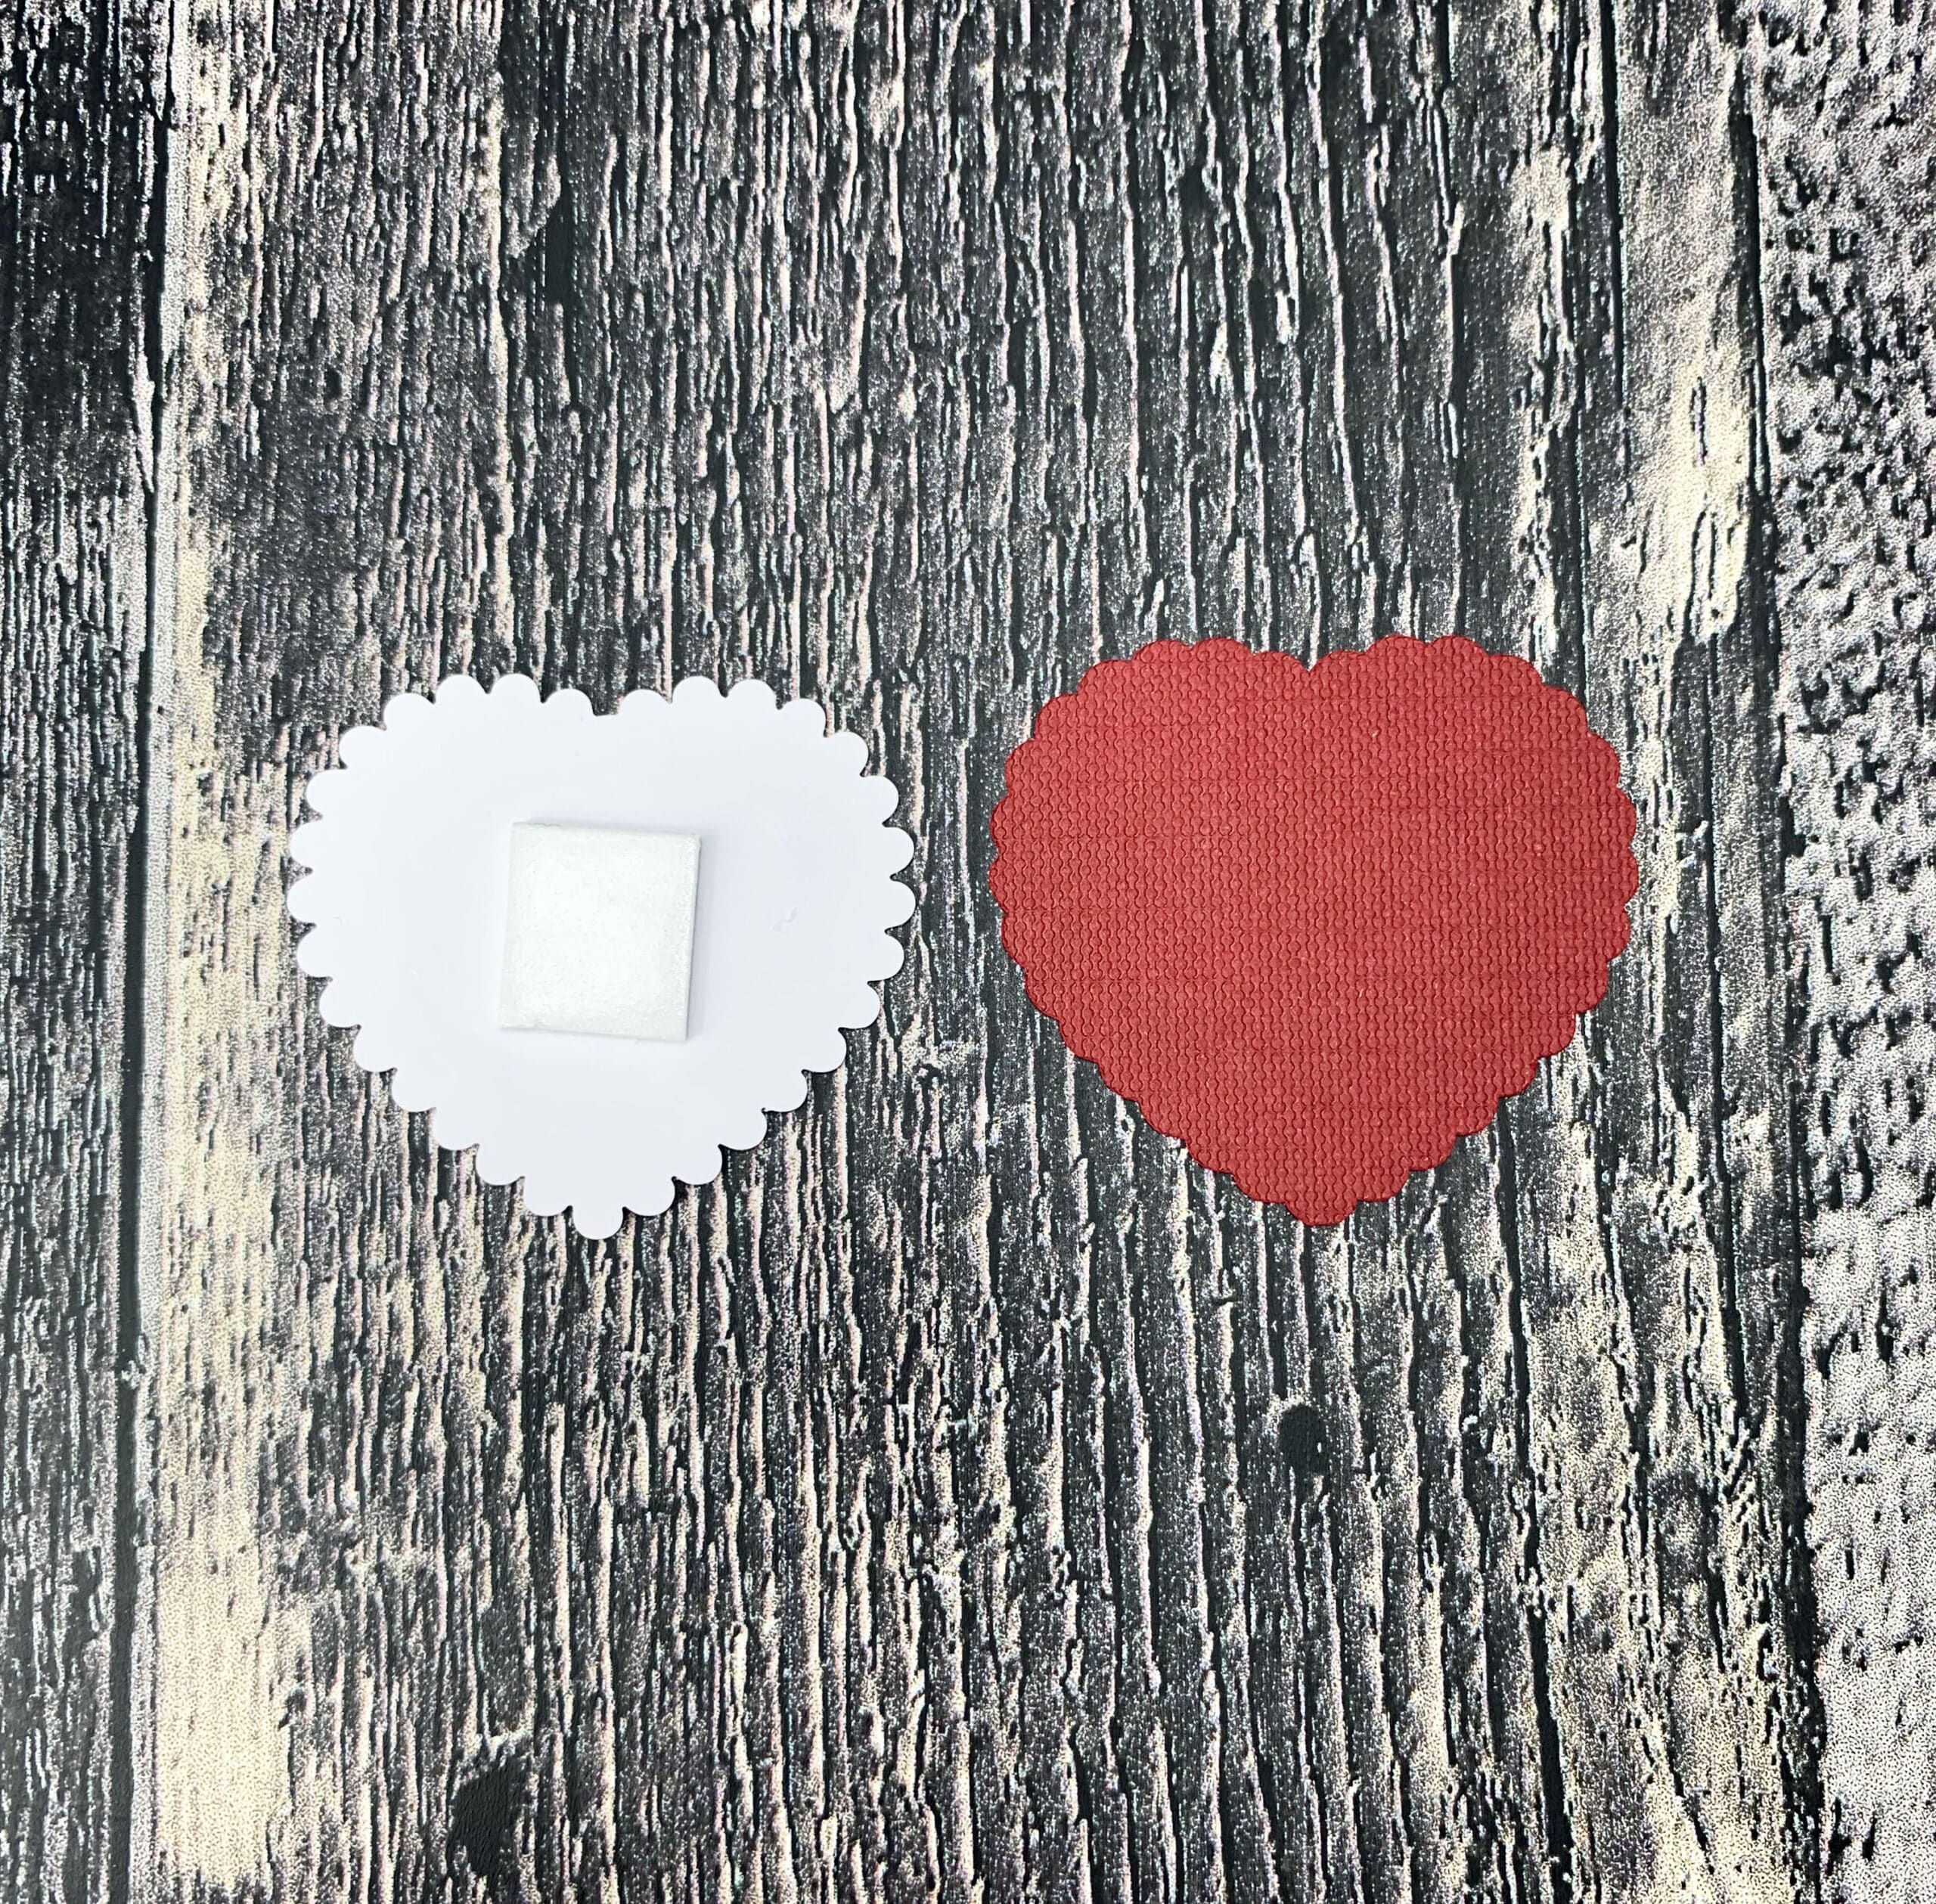 Comment Faire Une Carte Coeur Pour La St-Valentin